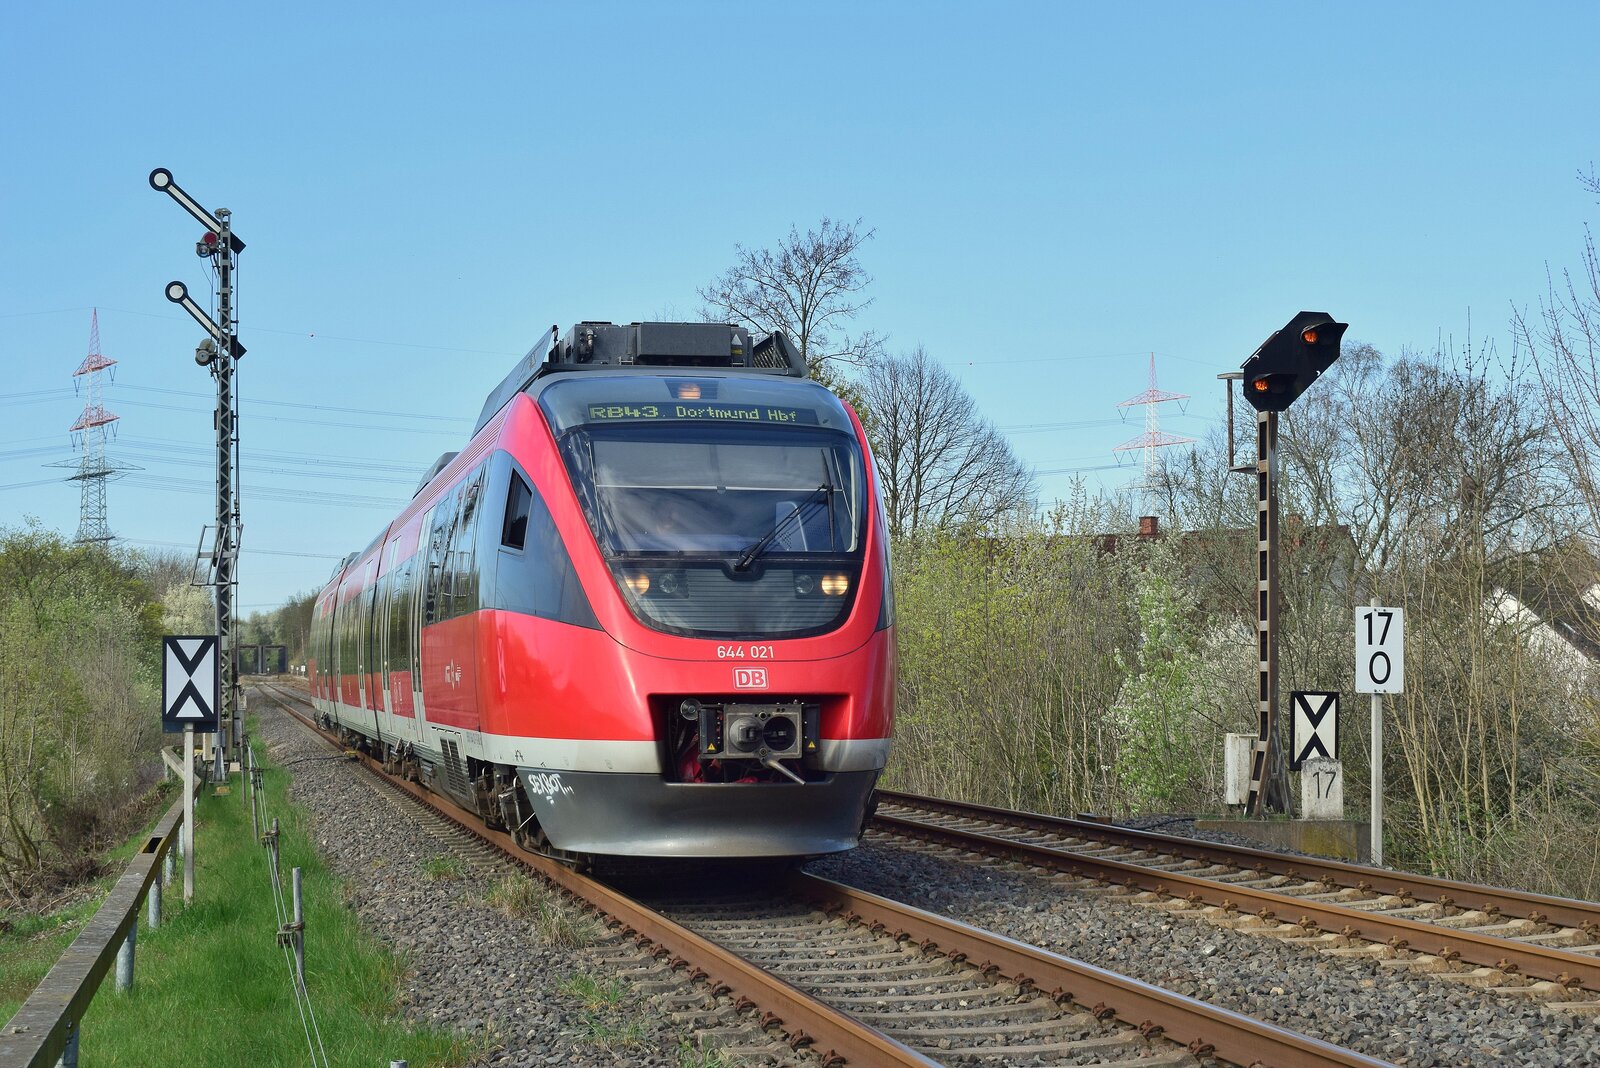 644 021 passiert das Einfahrsignal der Überleitstelle Dortmund Rahm in Richtung Castrp Rauxel.Das Bild wurde von einem Zaun am Bahnübergang aus gemacht.

Dortmund 14.04.2023